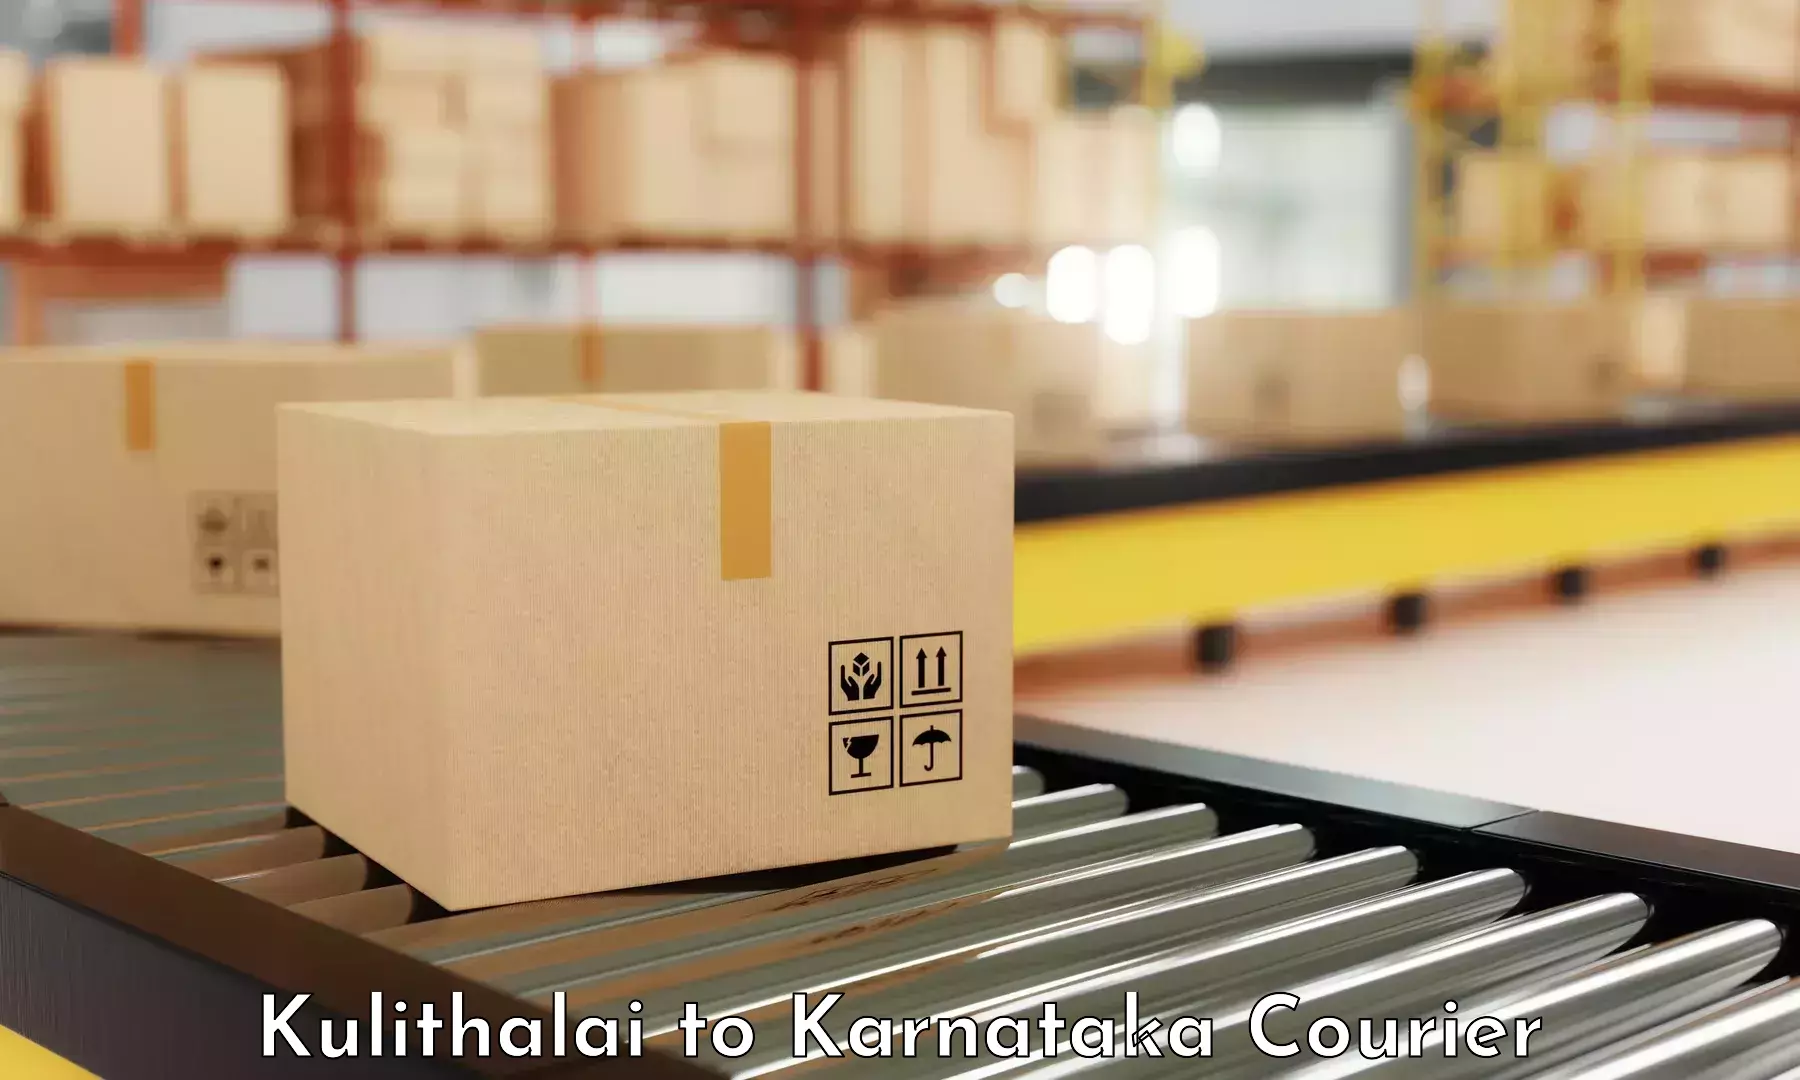 Nationwide shipping coverage in Kulithalai to Karnataka